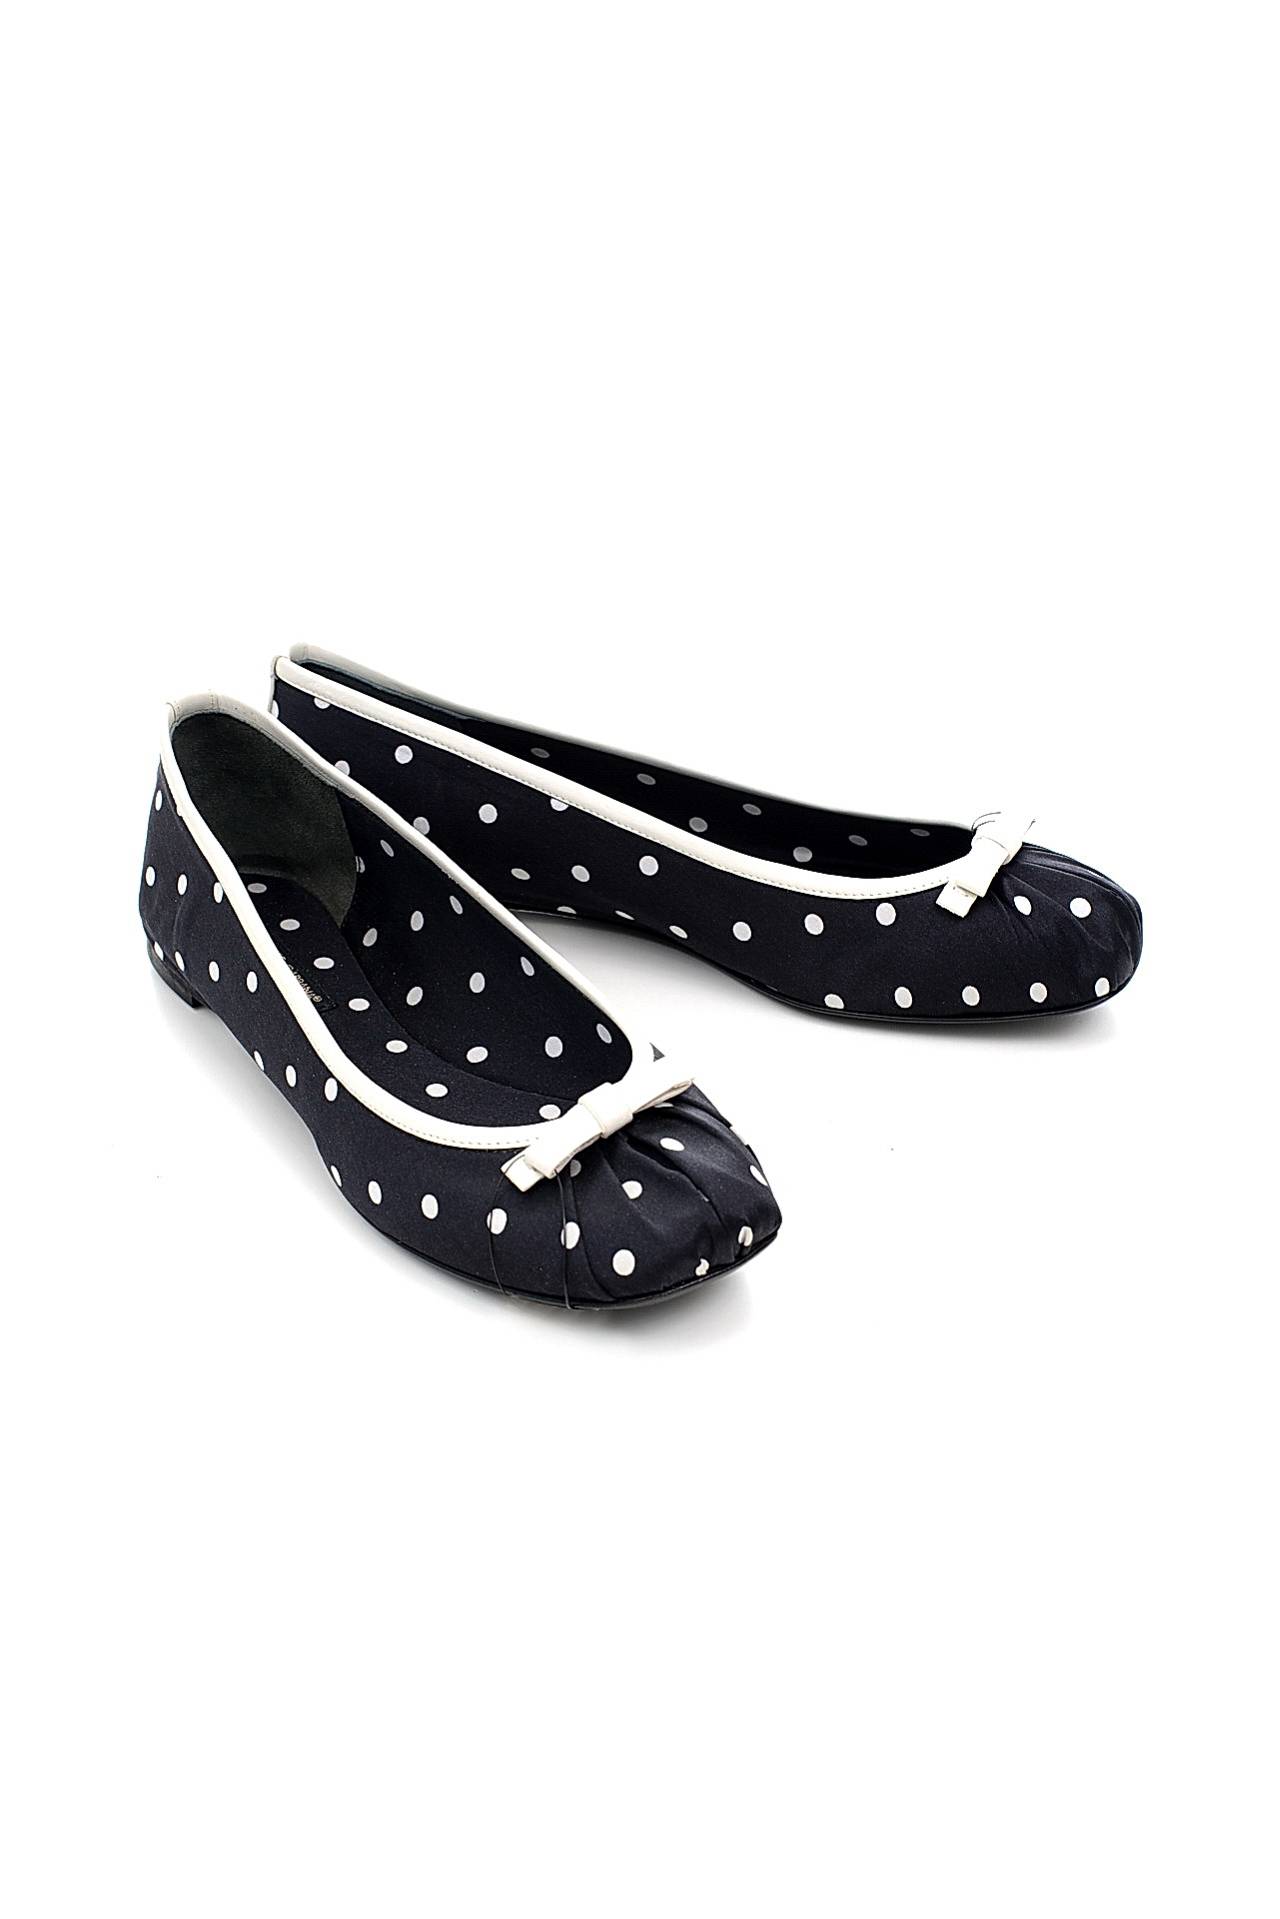 Обувь женская Балетки DOLCE & GABBANA (C11433/11.1). Купить за 13750 руб.